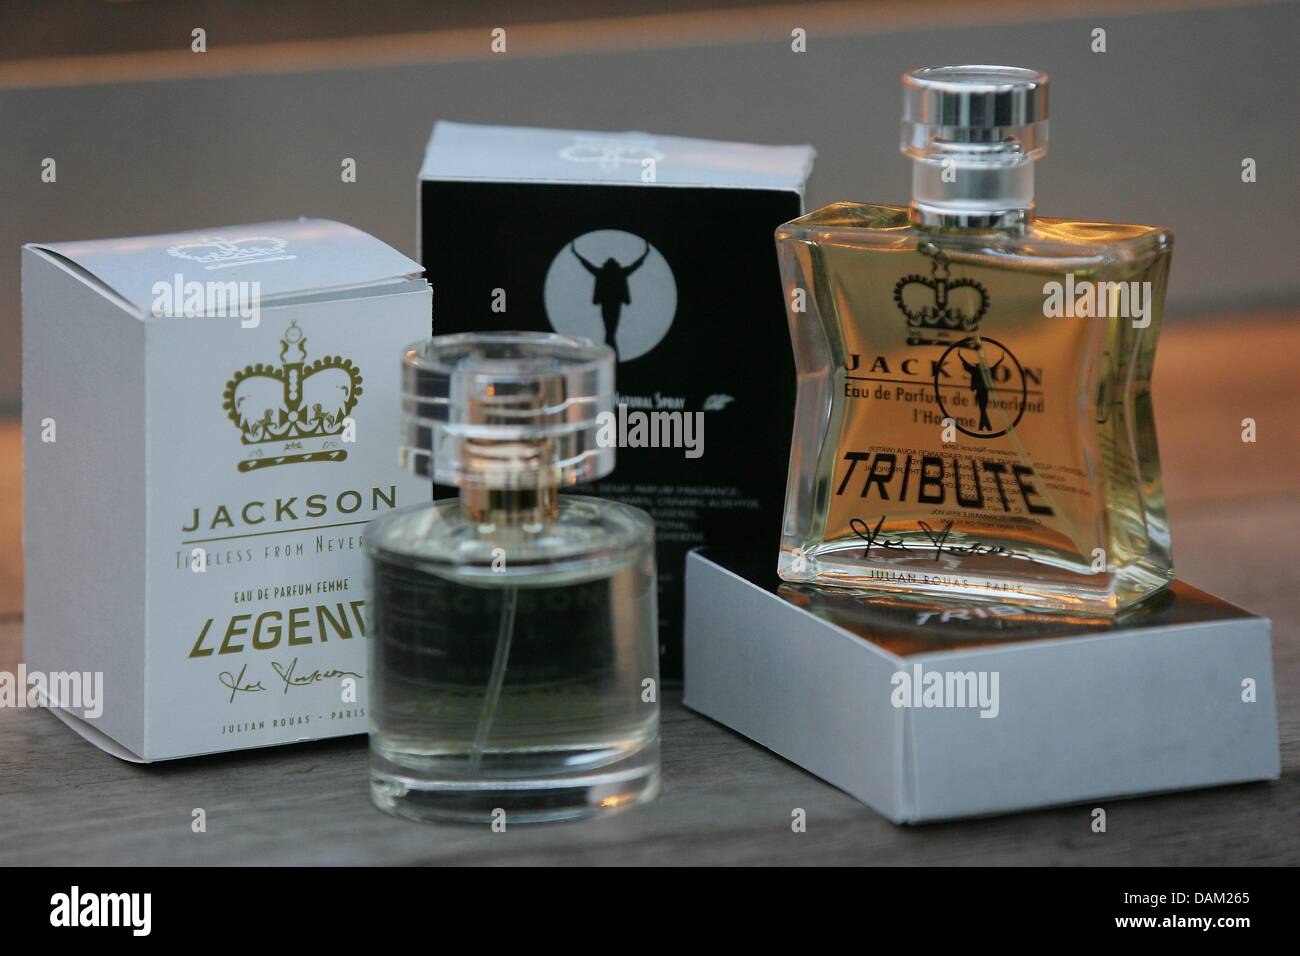 Parfüm-Flaschen eines Mannes Duft namens "Jacksons Tribute" und eine Frau Duft genannt "Jacksons Legend" von Michael Jacksons Vater, Joe Jackson, werden in Cannes, Frankreich, 17. Mai 2011 vorgestellt. Foto: Abj Stockfoto